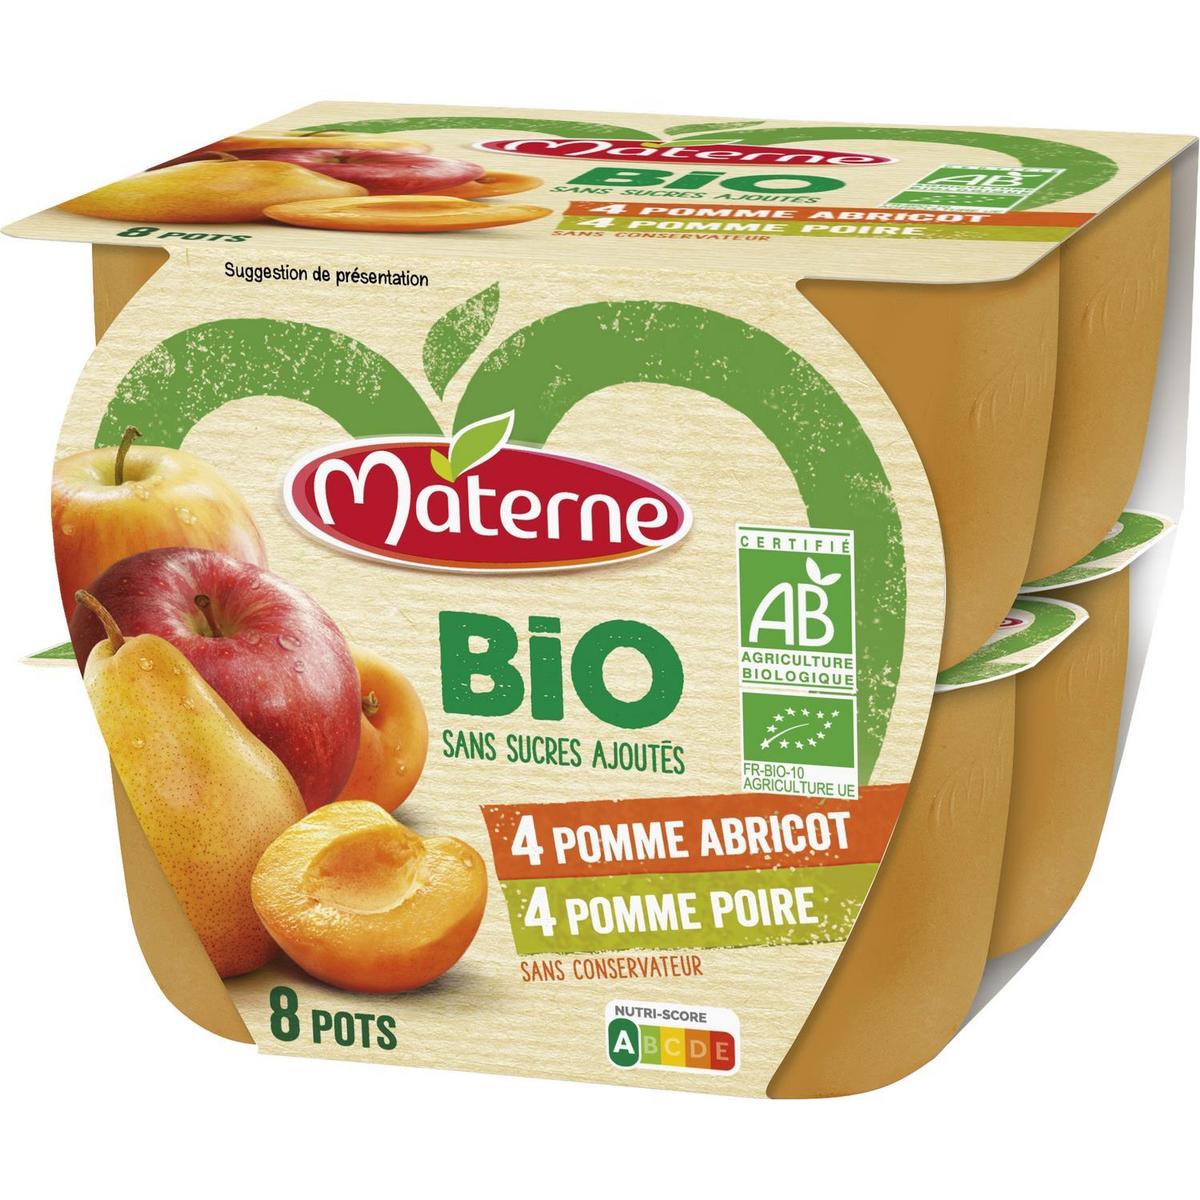 Achat Materne Purée pomme poire, pomme abricot sans sucres ajoutés Bio